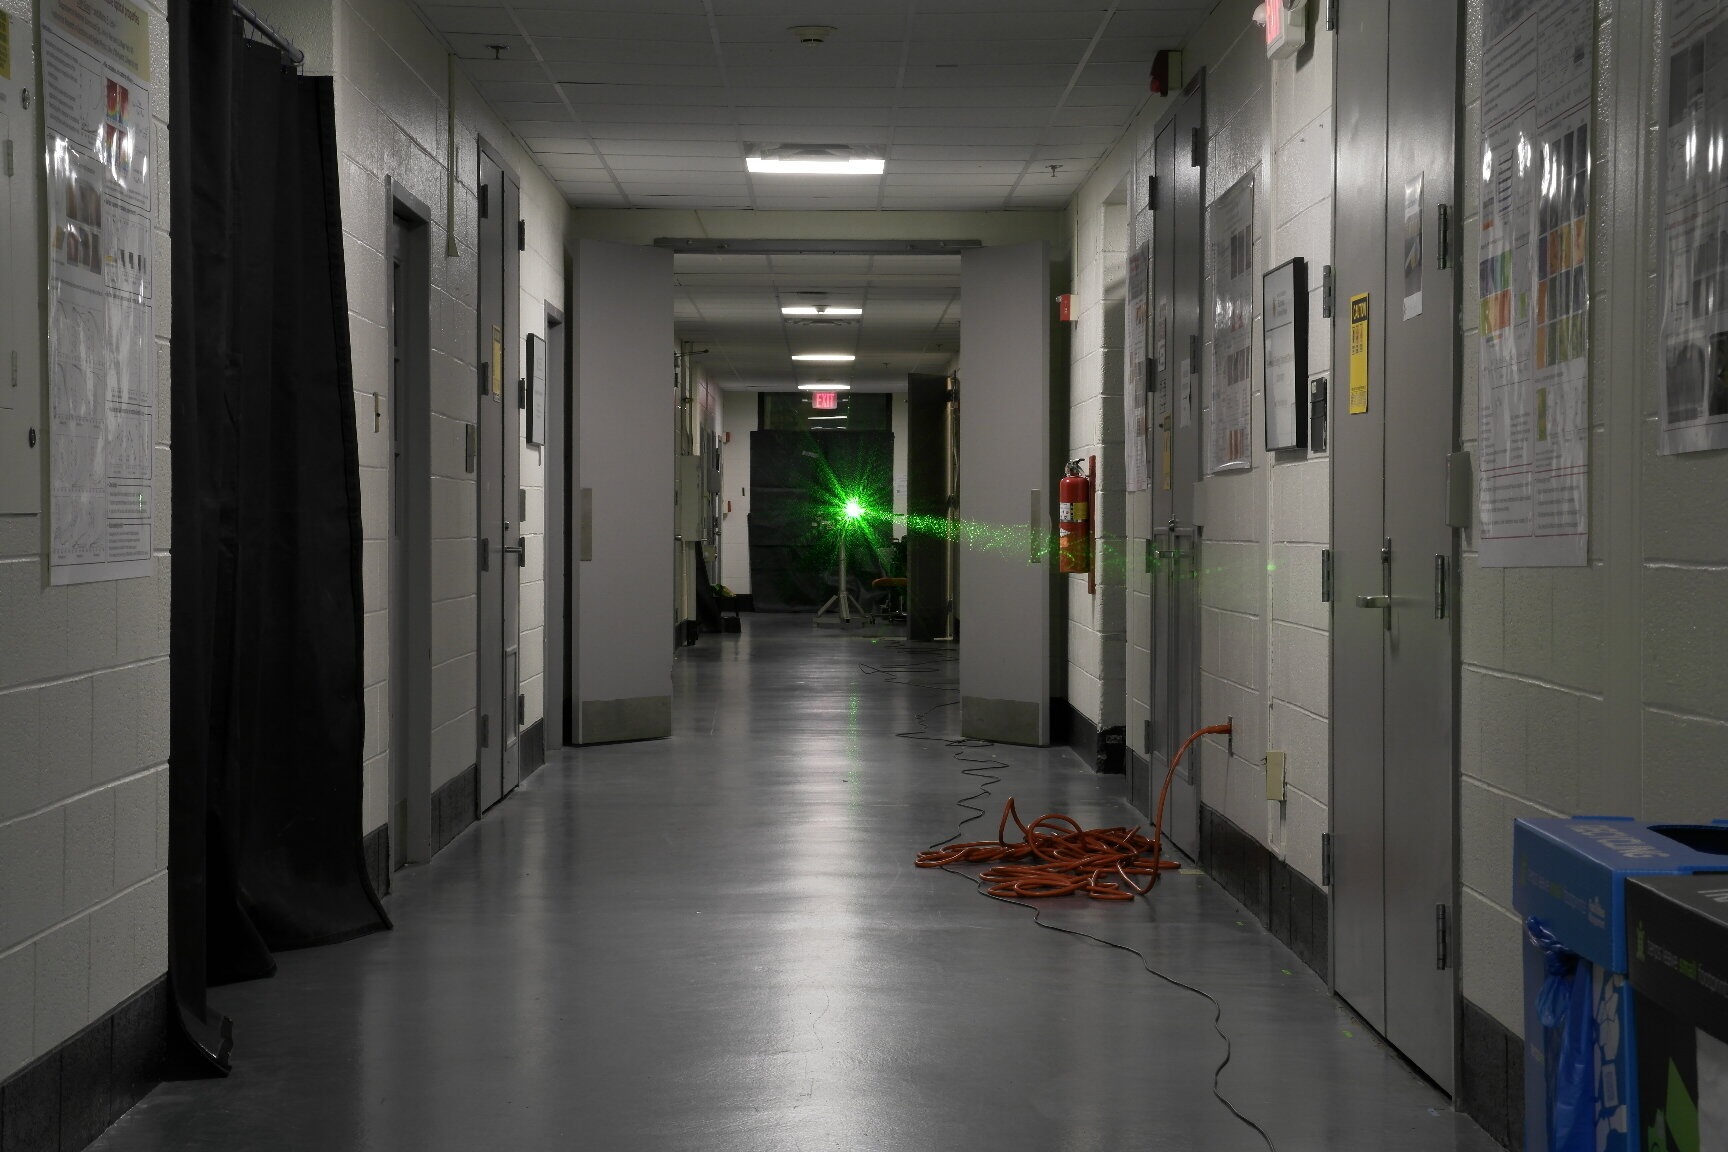 Eksperimen laser 50 meter mencetak rekor di koridor universitas